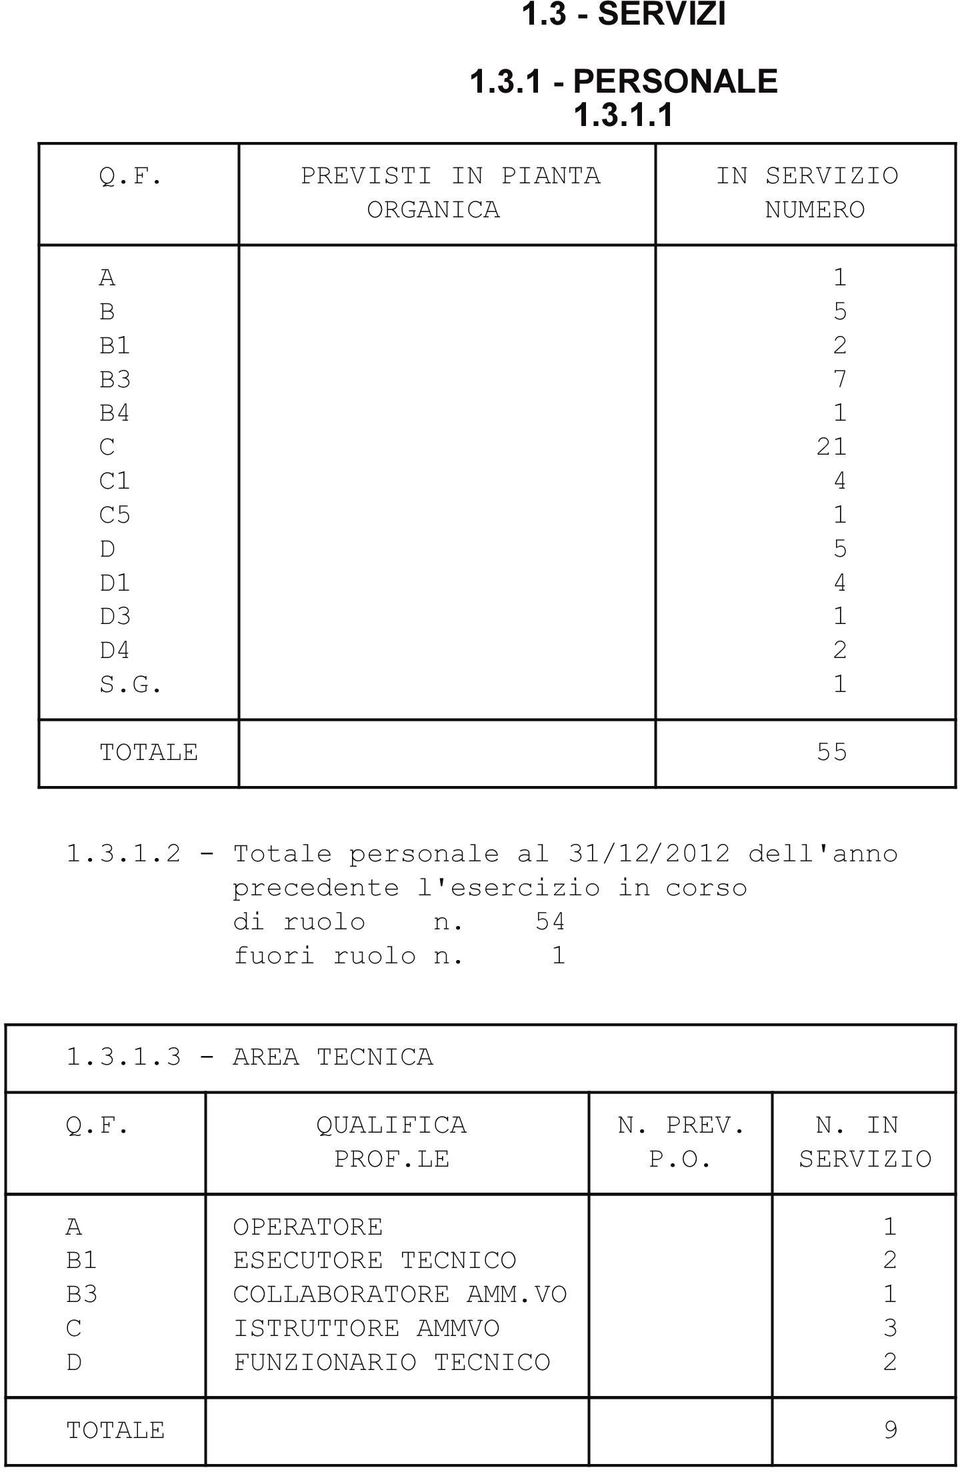 3.1.2 - Totale personale al 31/12/2012 dell'anno precedente l'esercizio in corso di ruolo n. 54 fuori ruolo n. 1 1.3.1.3 - AREA TECNICA Q.